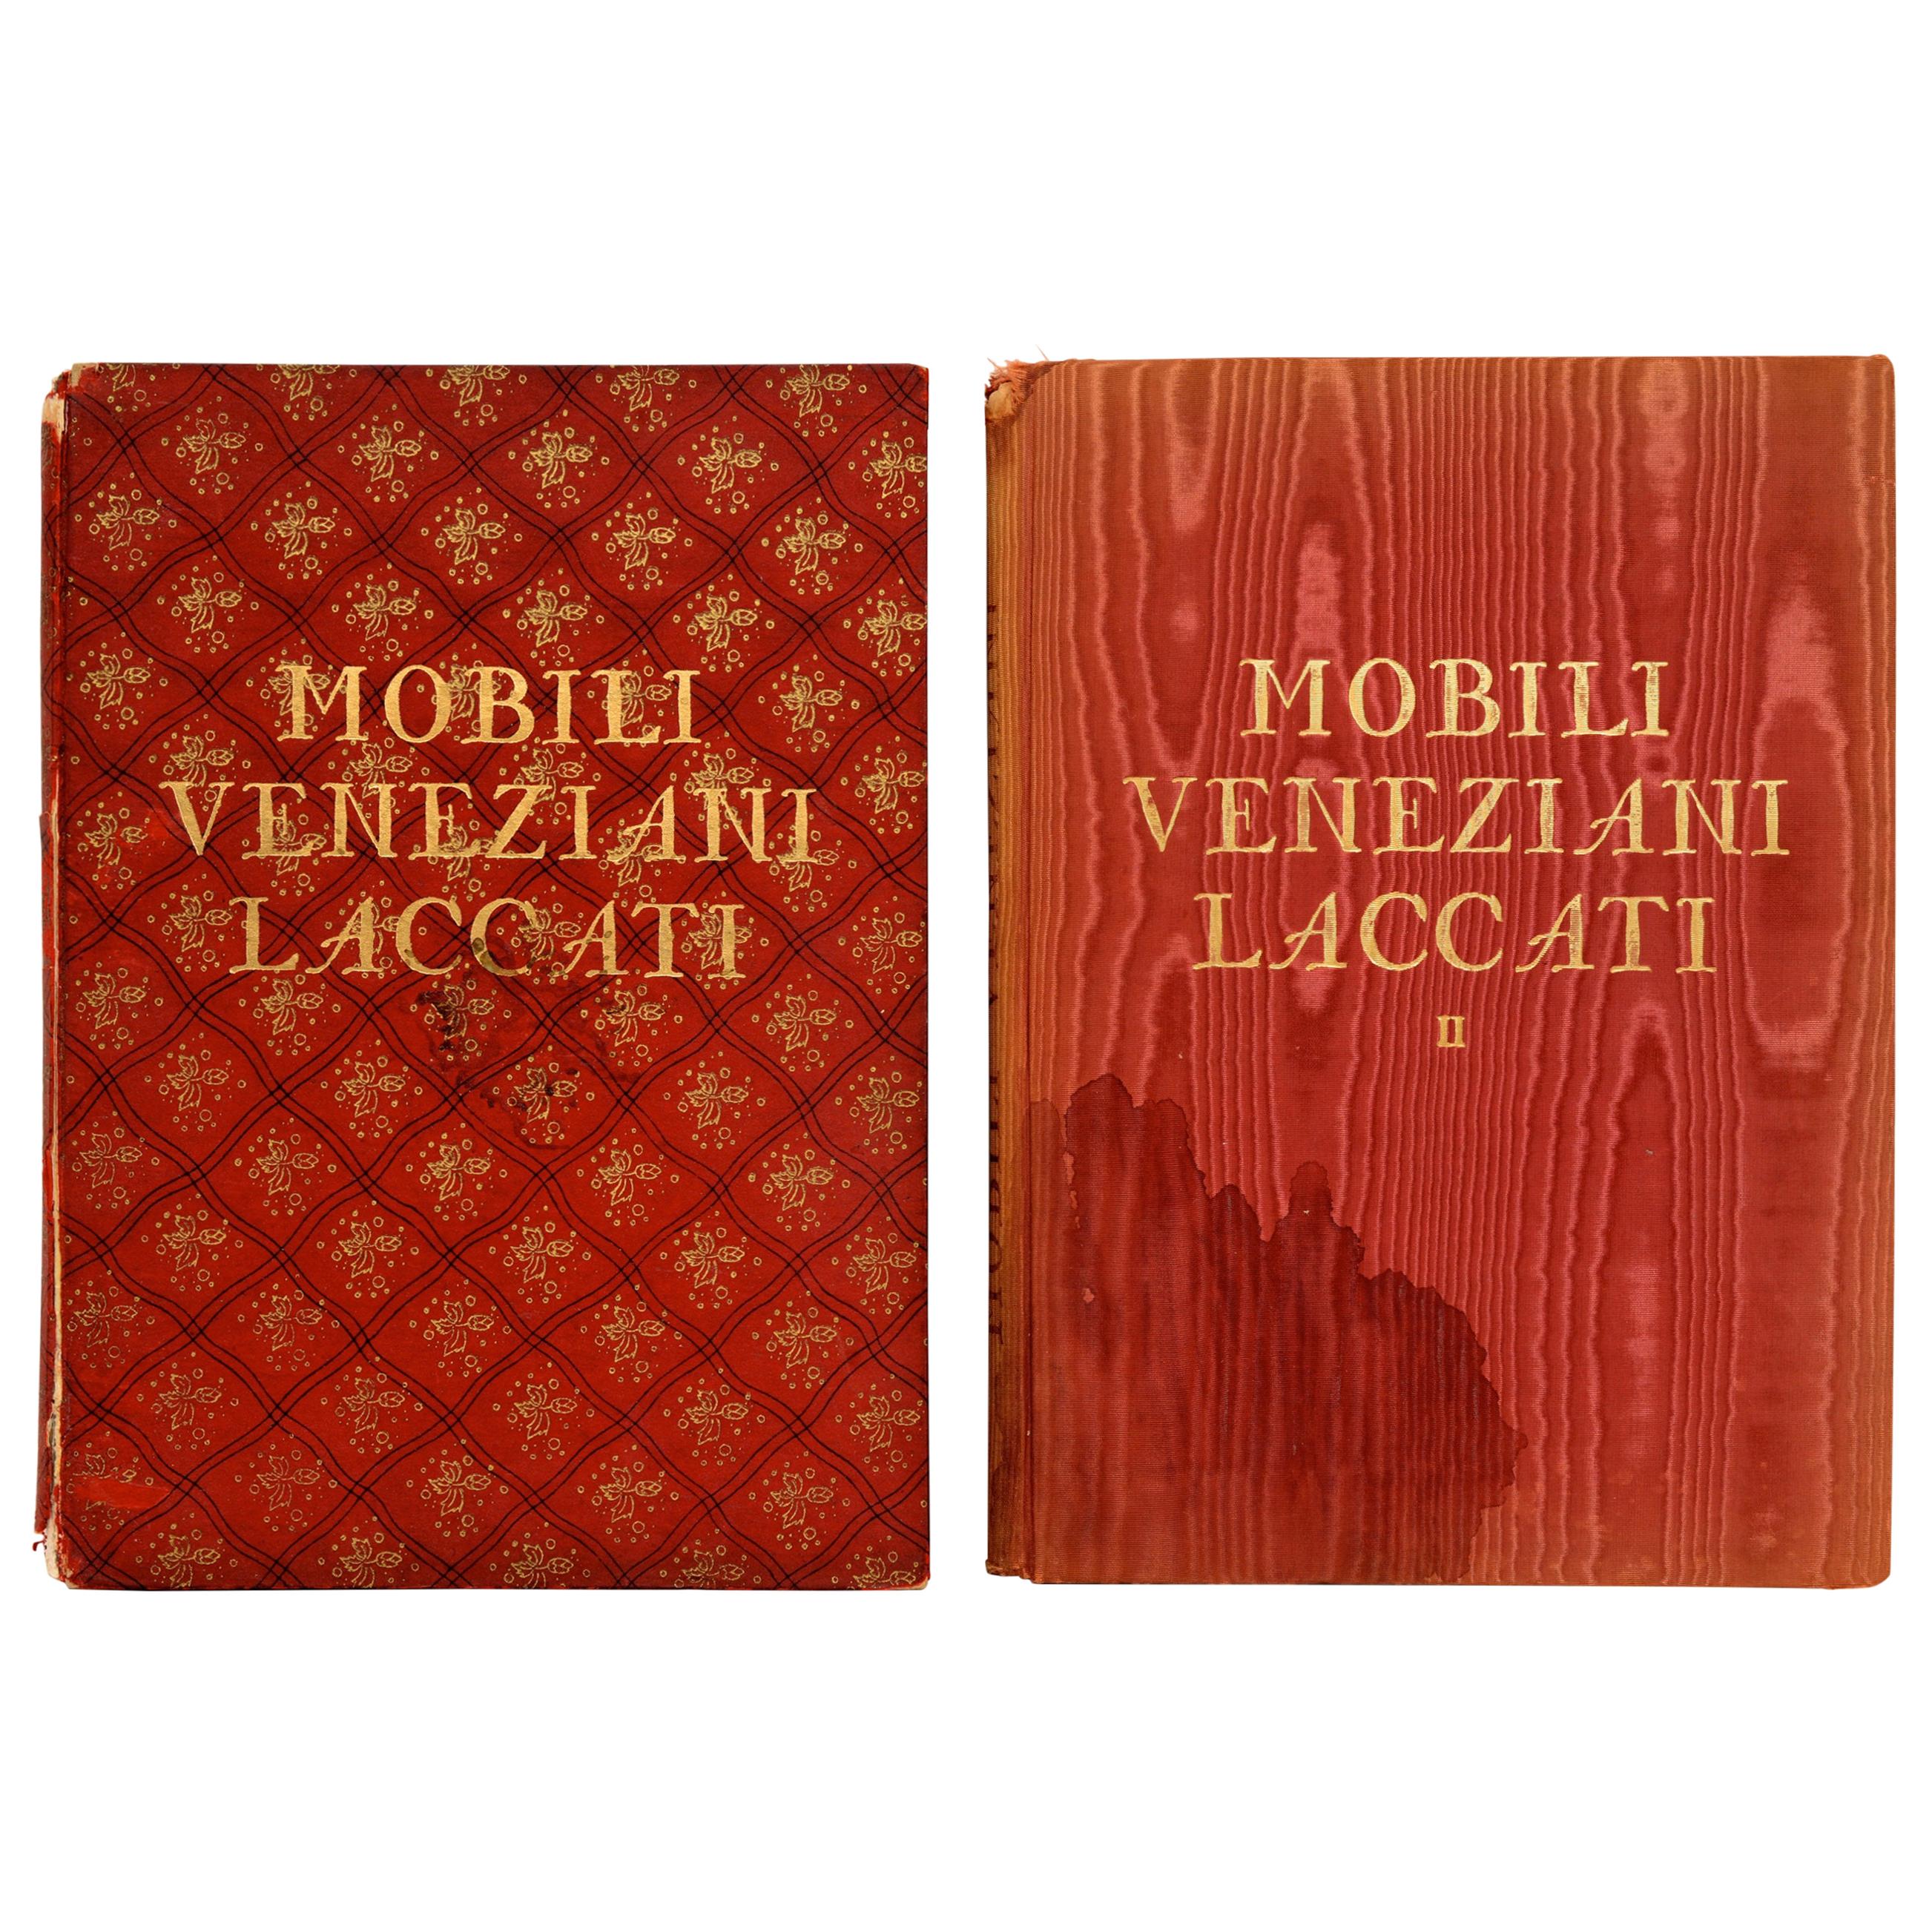 Mobili Veneziani Laccati, Venetian Lacquer Furniture, 2 Volume Set First Edition